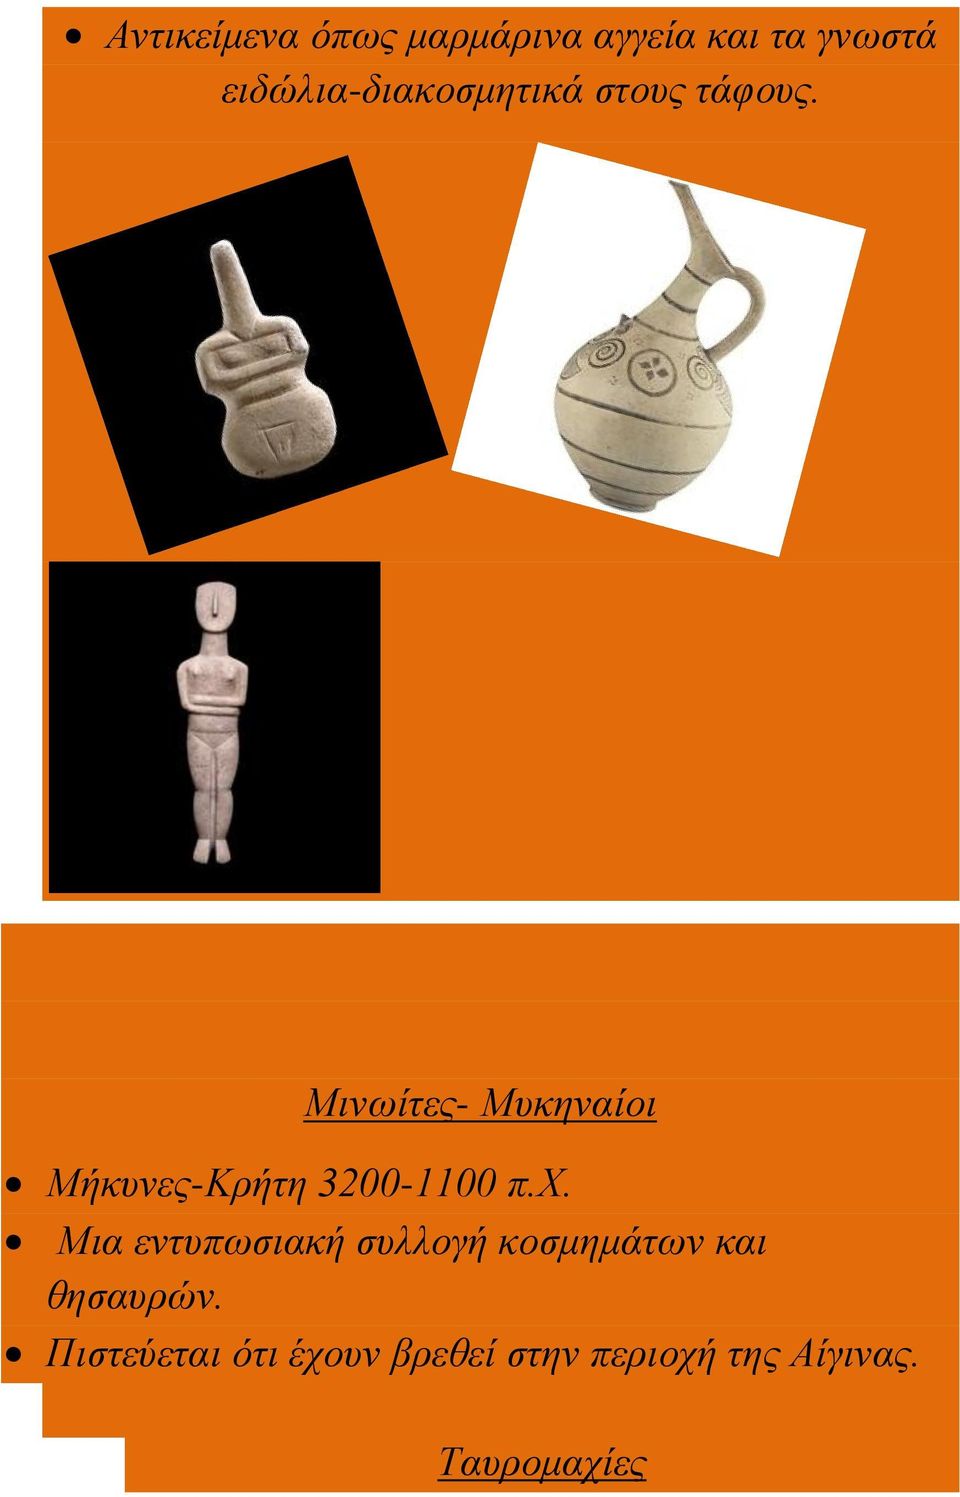 Μινωίτες- Μυκηναίοι Μήκυνες-Κρήτη 3200-1100 π.χ.